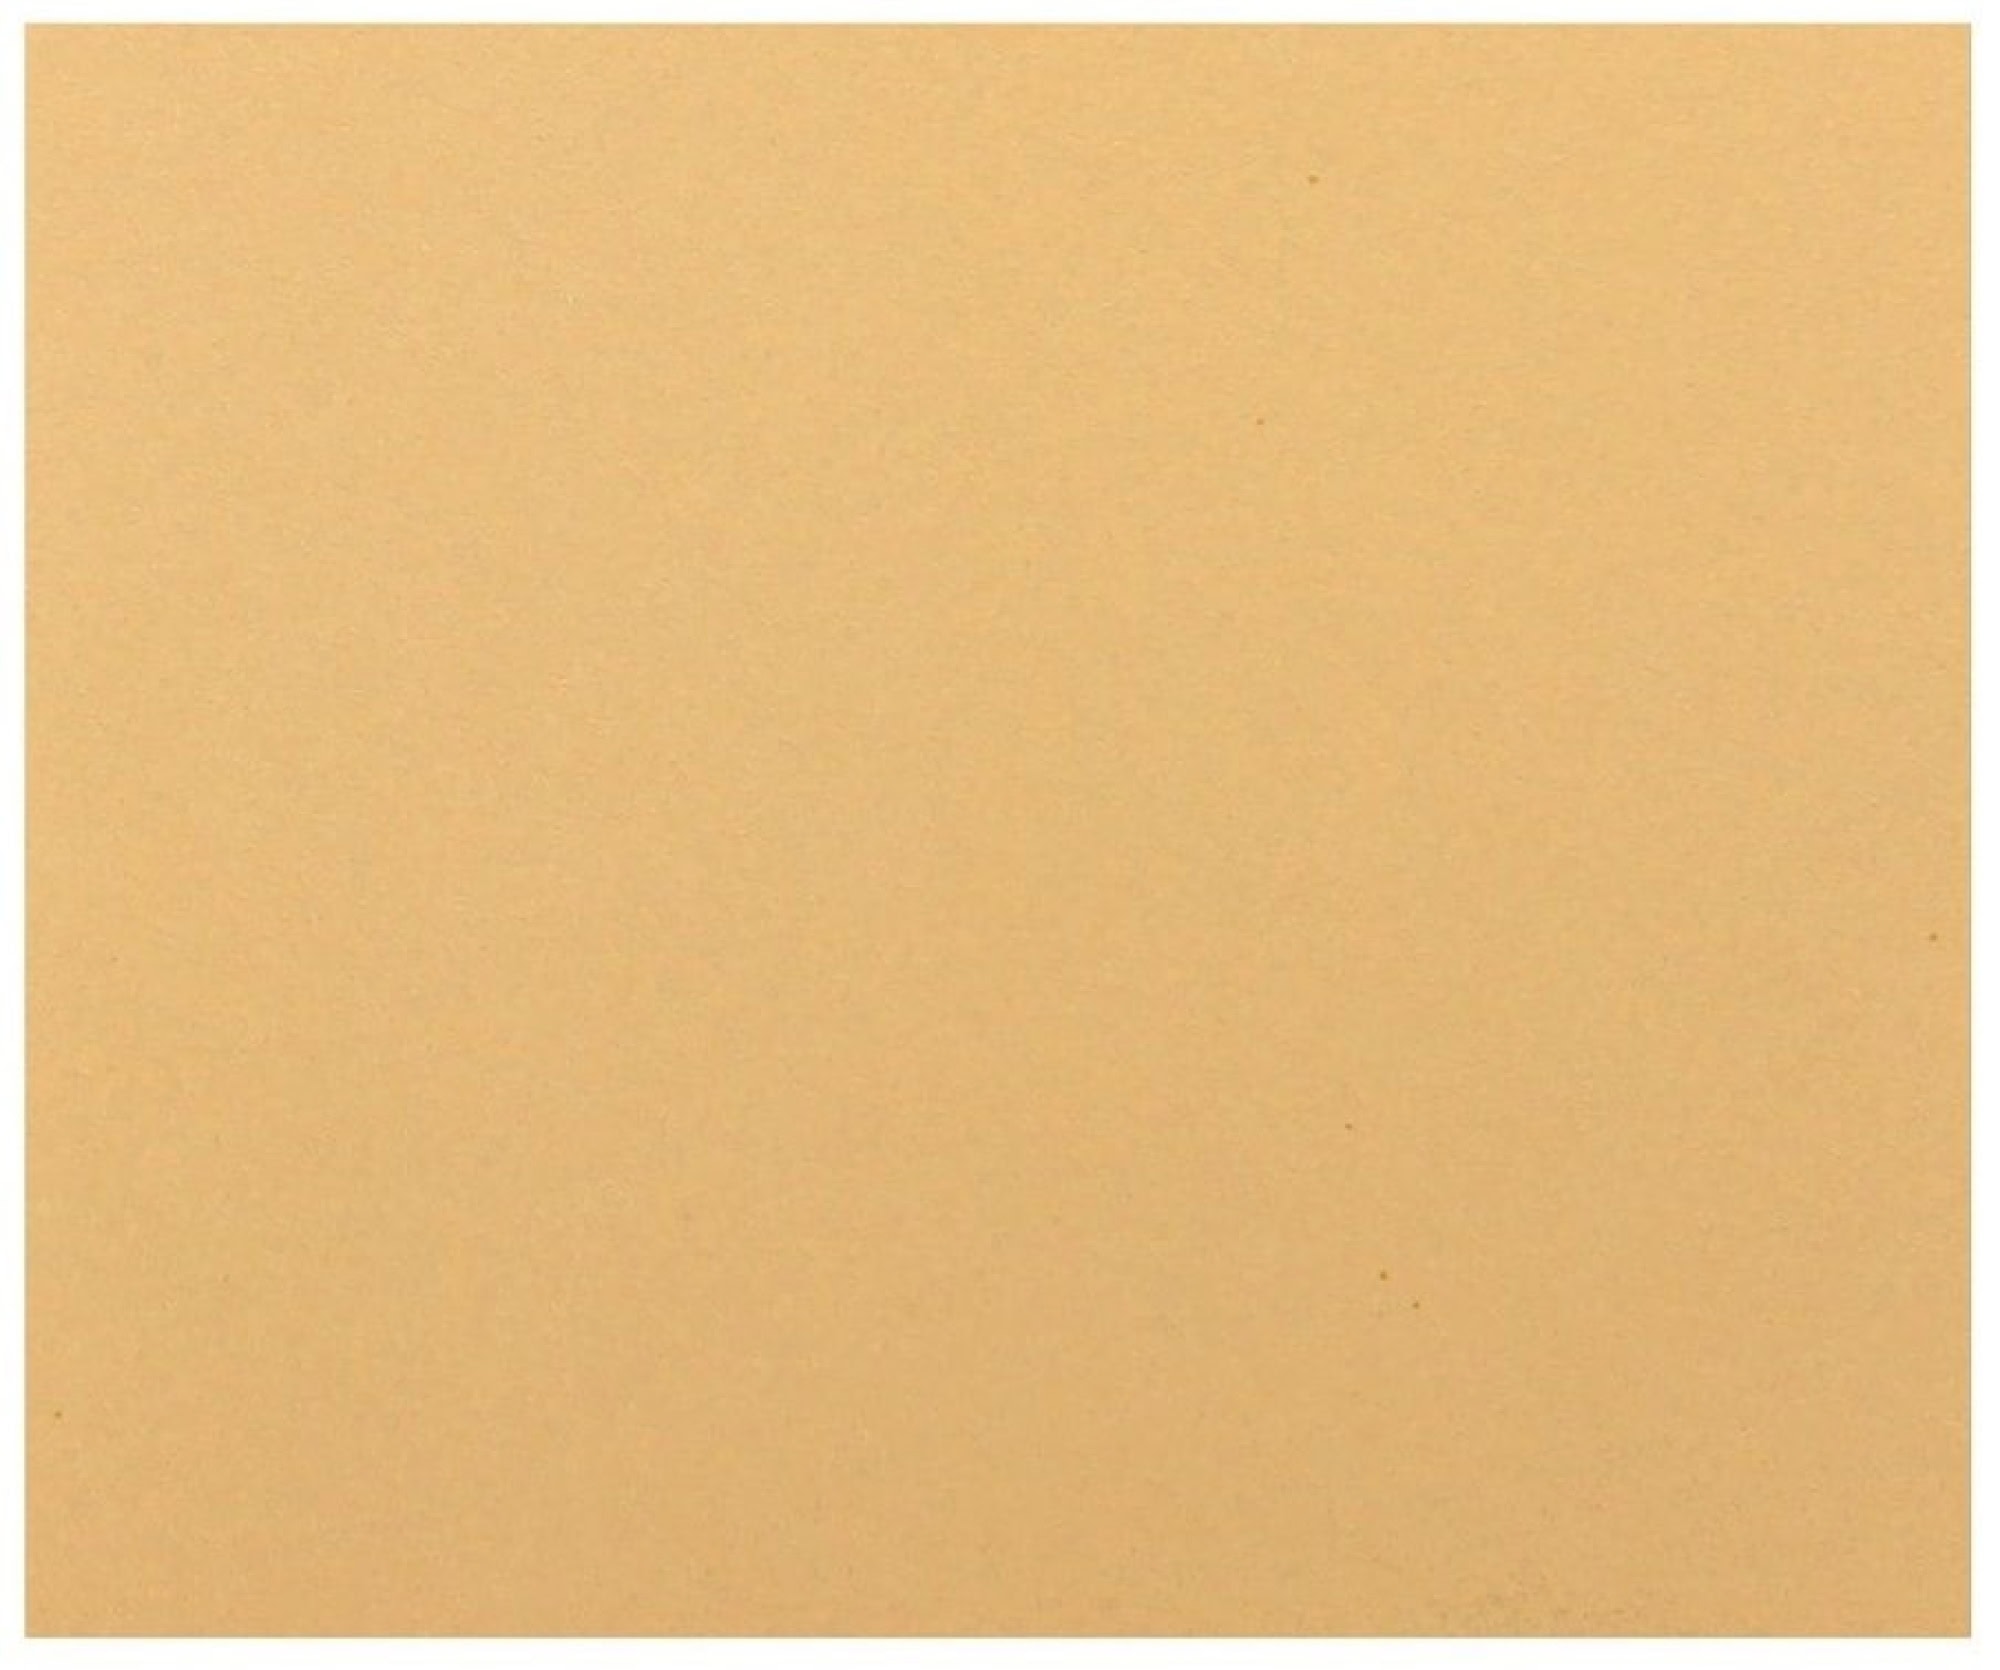 Mirka® Goldflex Soft 2971401015, 115 mm x 140 mm, P150, A, Weich, Ohne Haftung, Einseitige Handpads mit Aluminiumkorn, Für Finish- und Polierarbeiten an Werkstücken